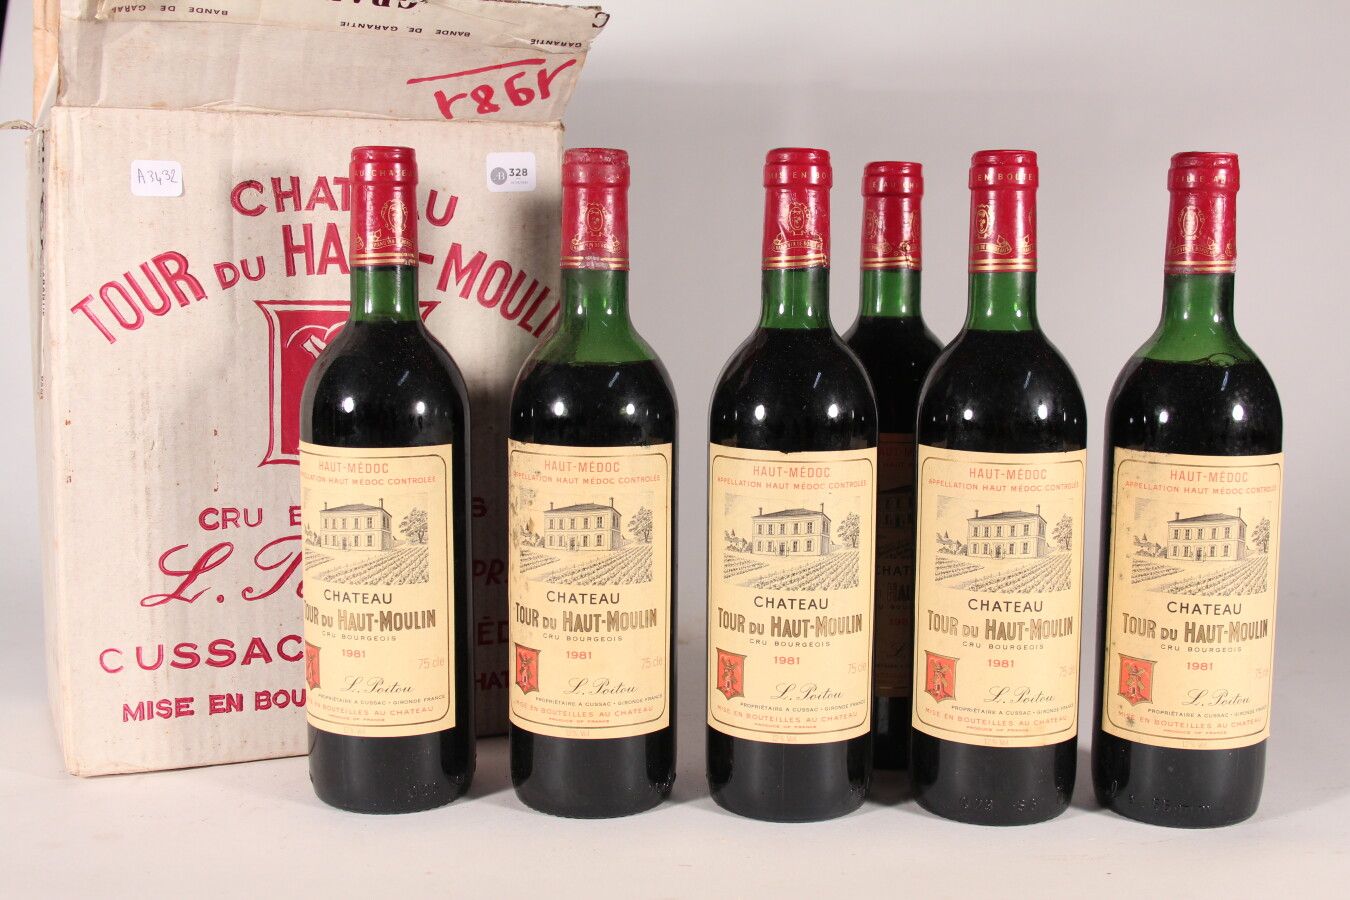 Null 1981 - Château La Tour du Haut Moulin

Haut Médoc - 6 bottiglie